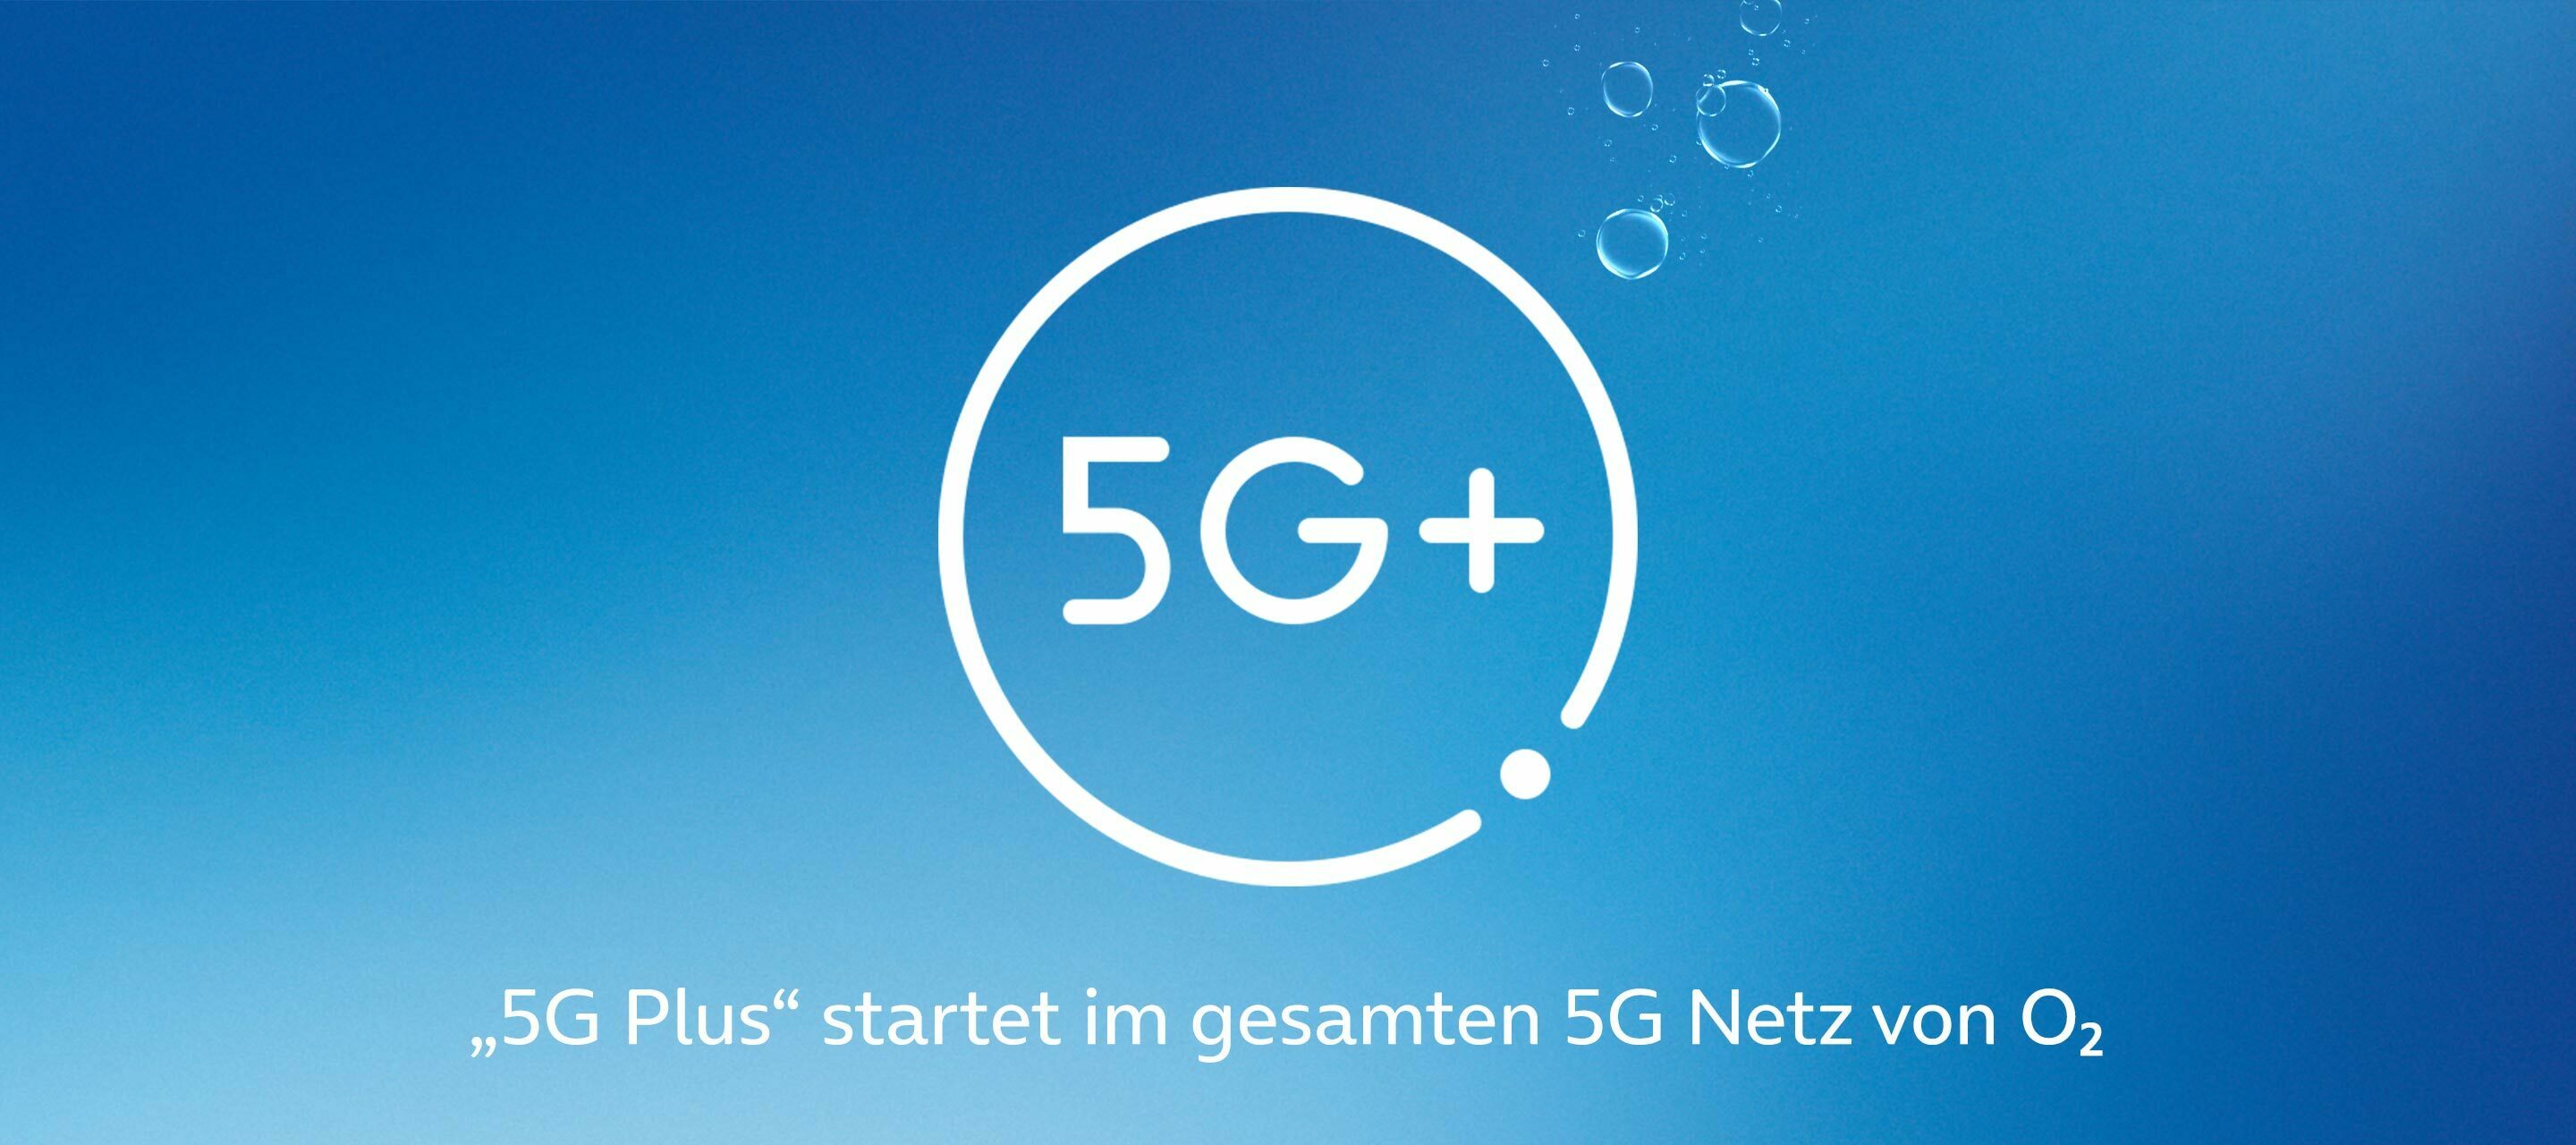 5G Plus - Die neueste Netztechnologie bei O₂